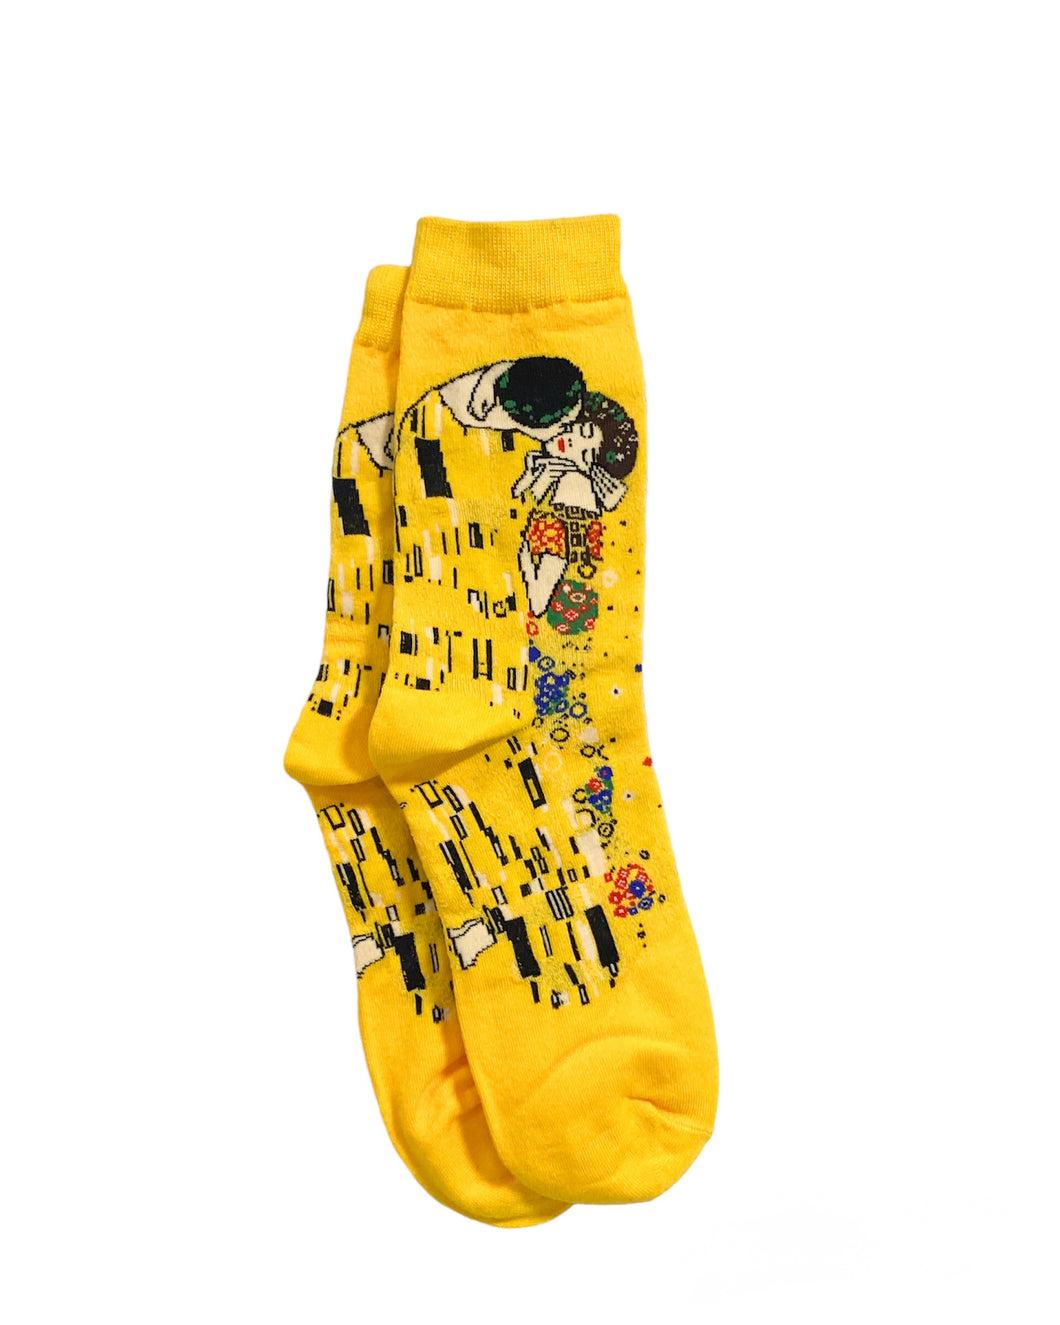 Klimt’s “The Kiss” Socks